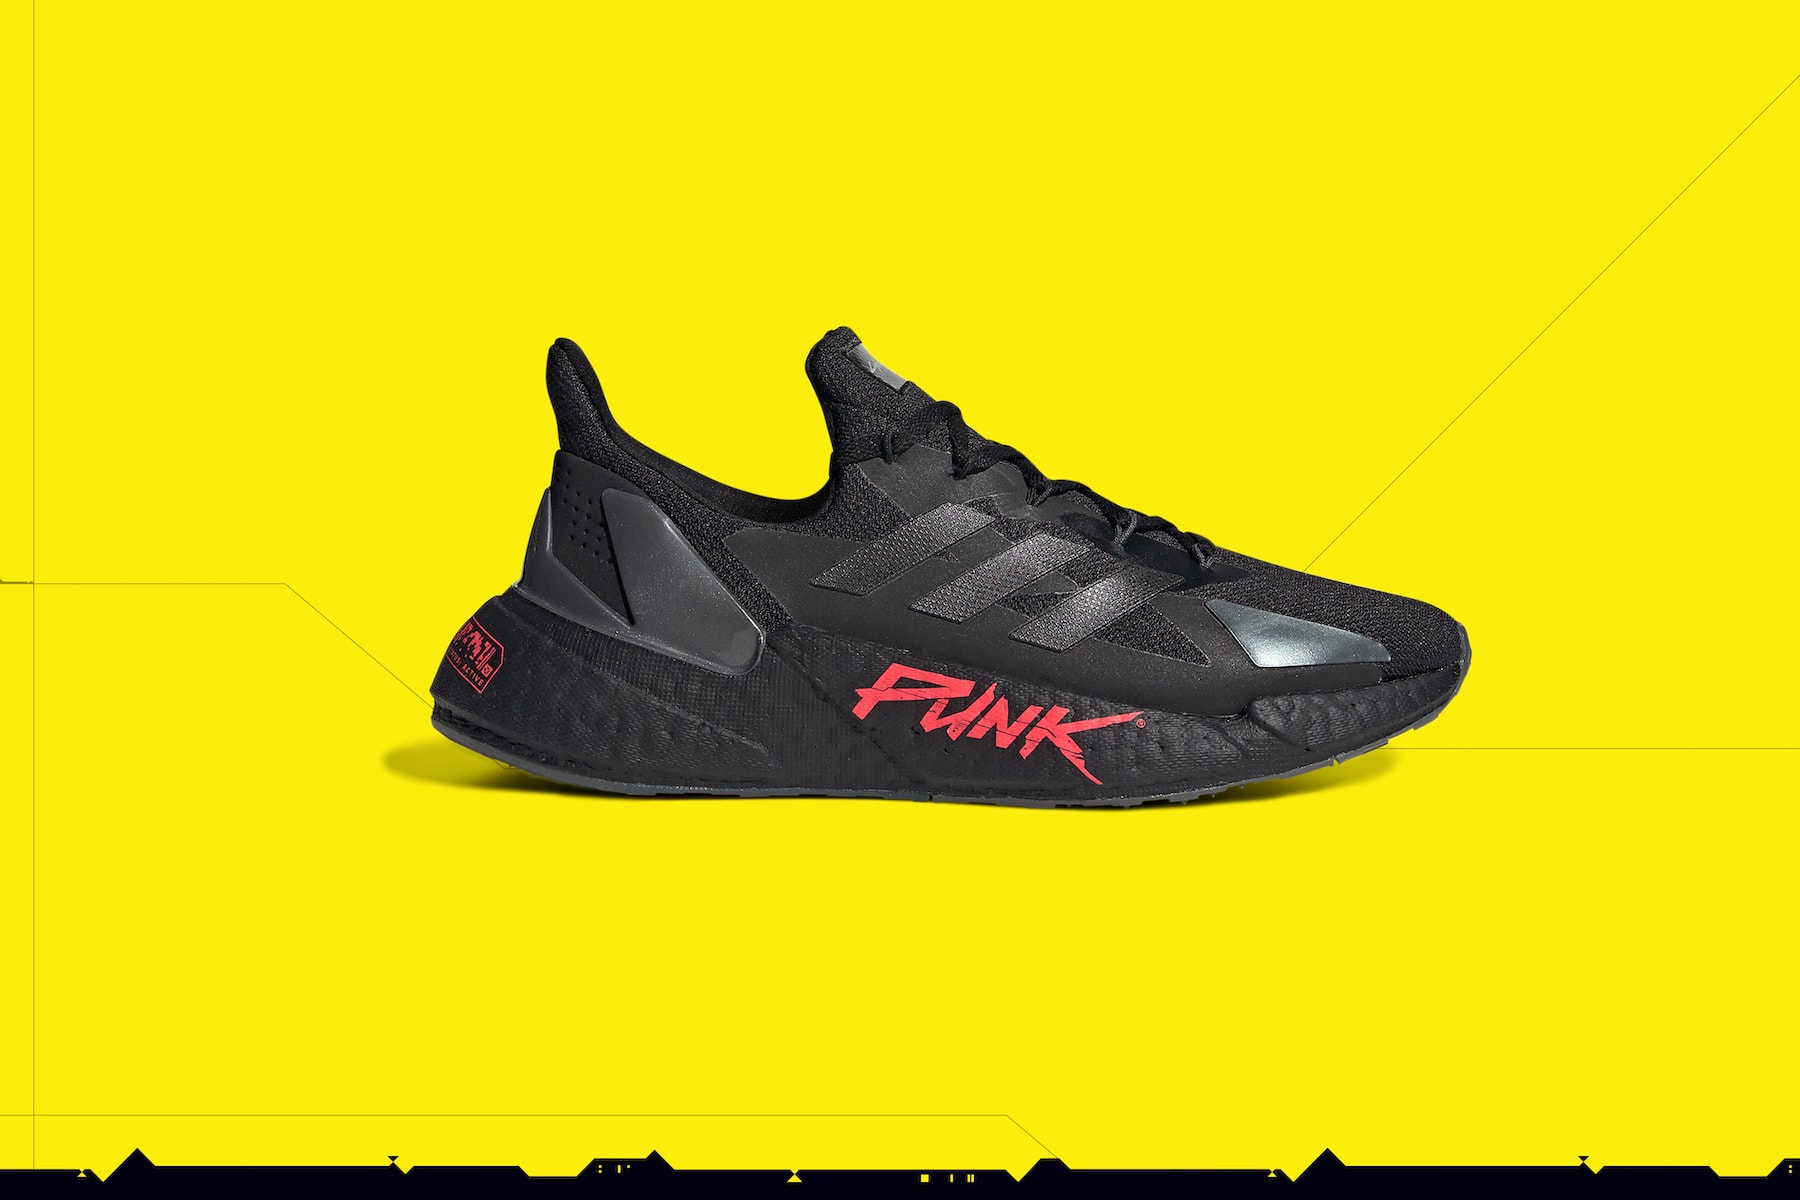 adidas 攜手《Cyberpunk 2077》推出 X9000 聯名鞋款系列